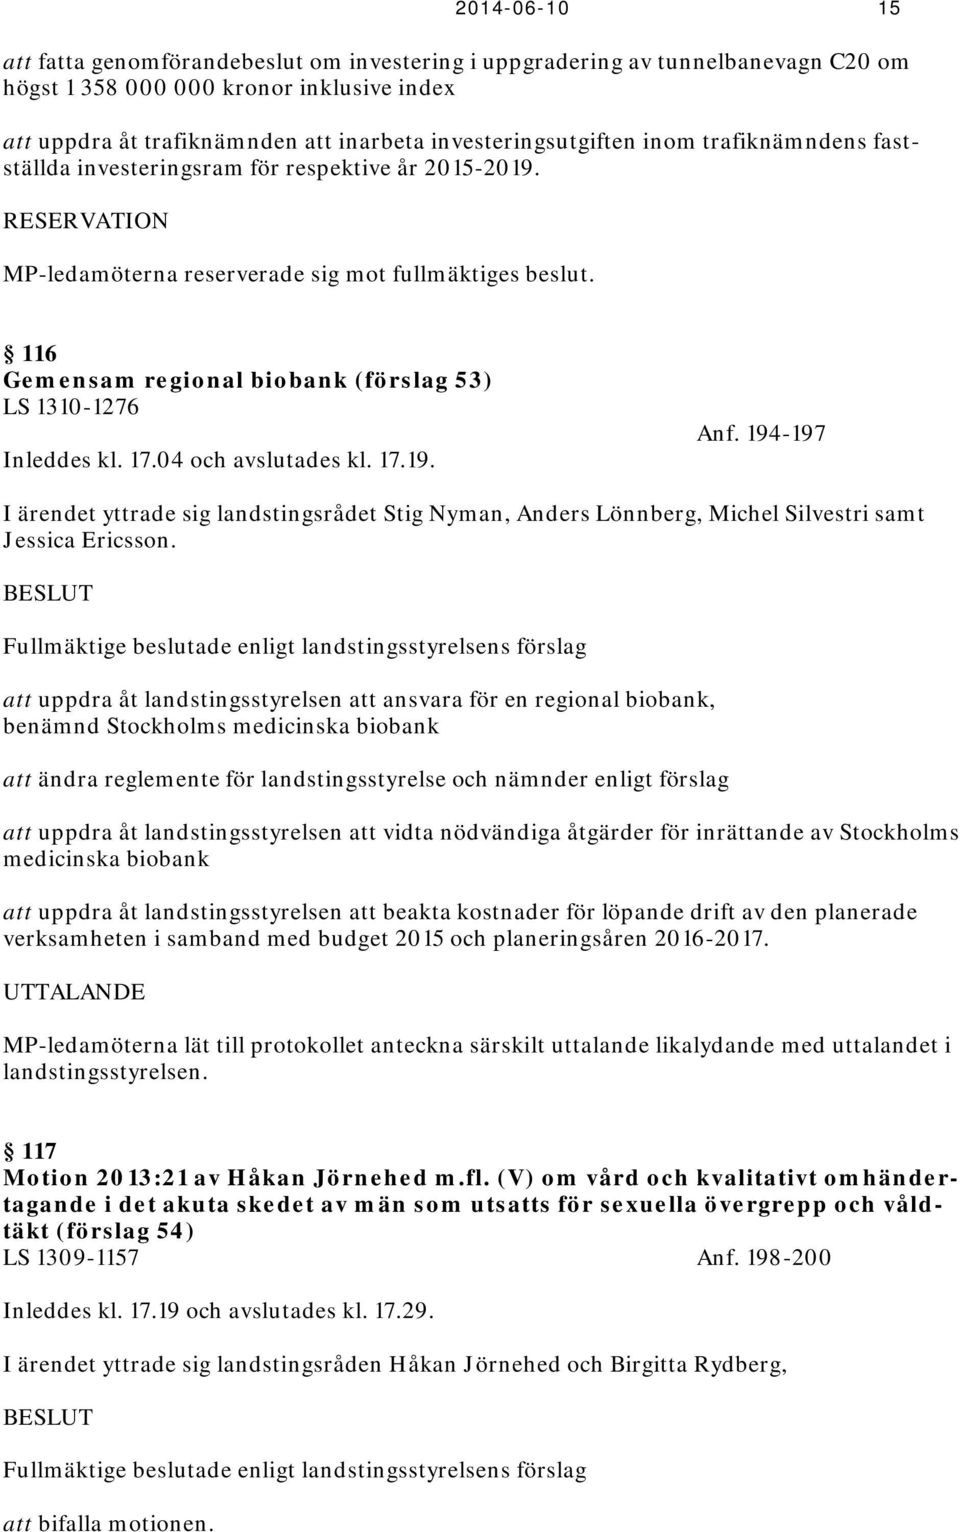 116 Gemensam regional biobank (förslag 53) LS 1310-1276 Inleddes kl. 17.04 och avslutades kl. 17.19. Anf.